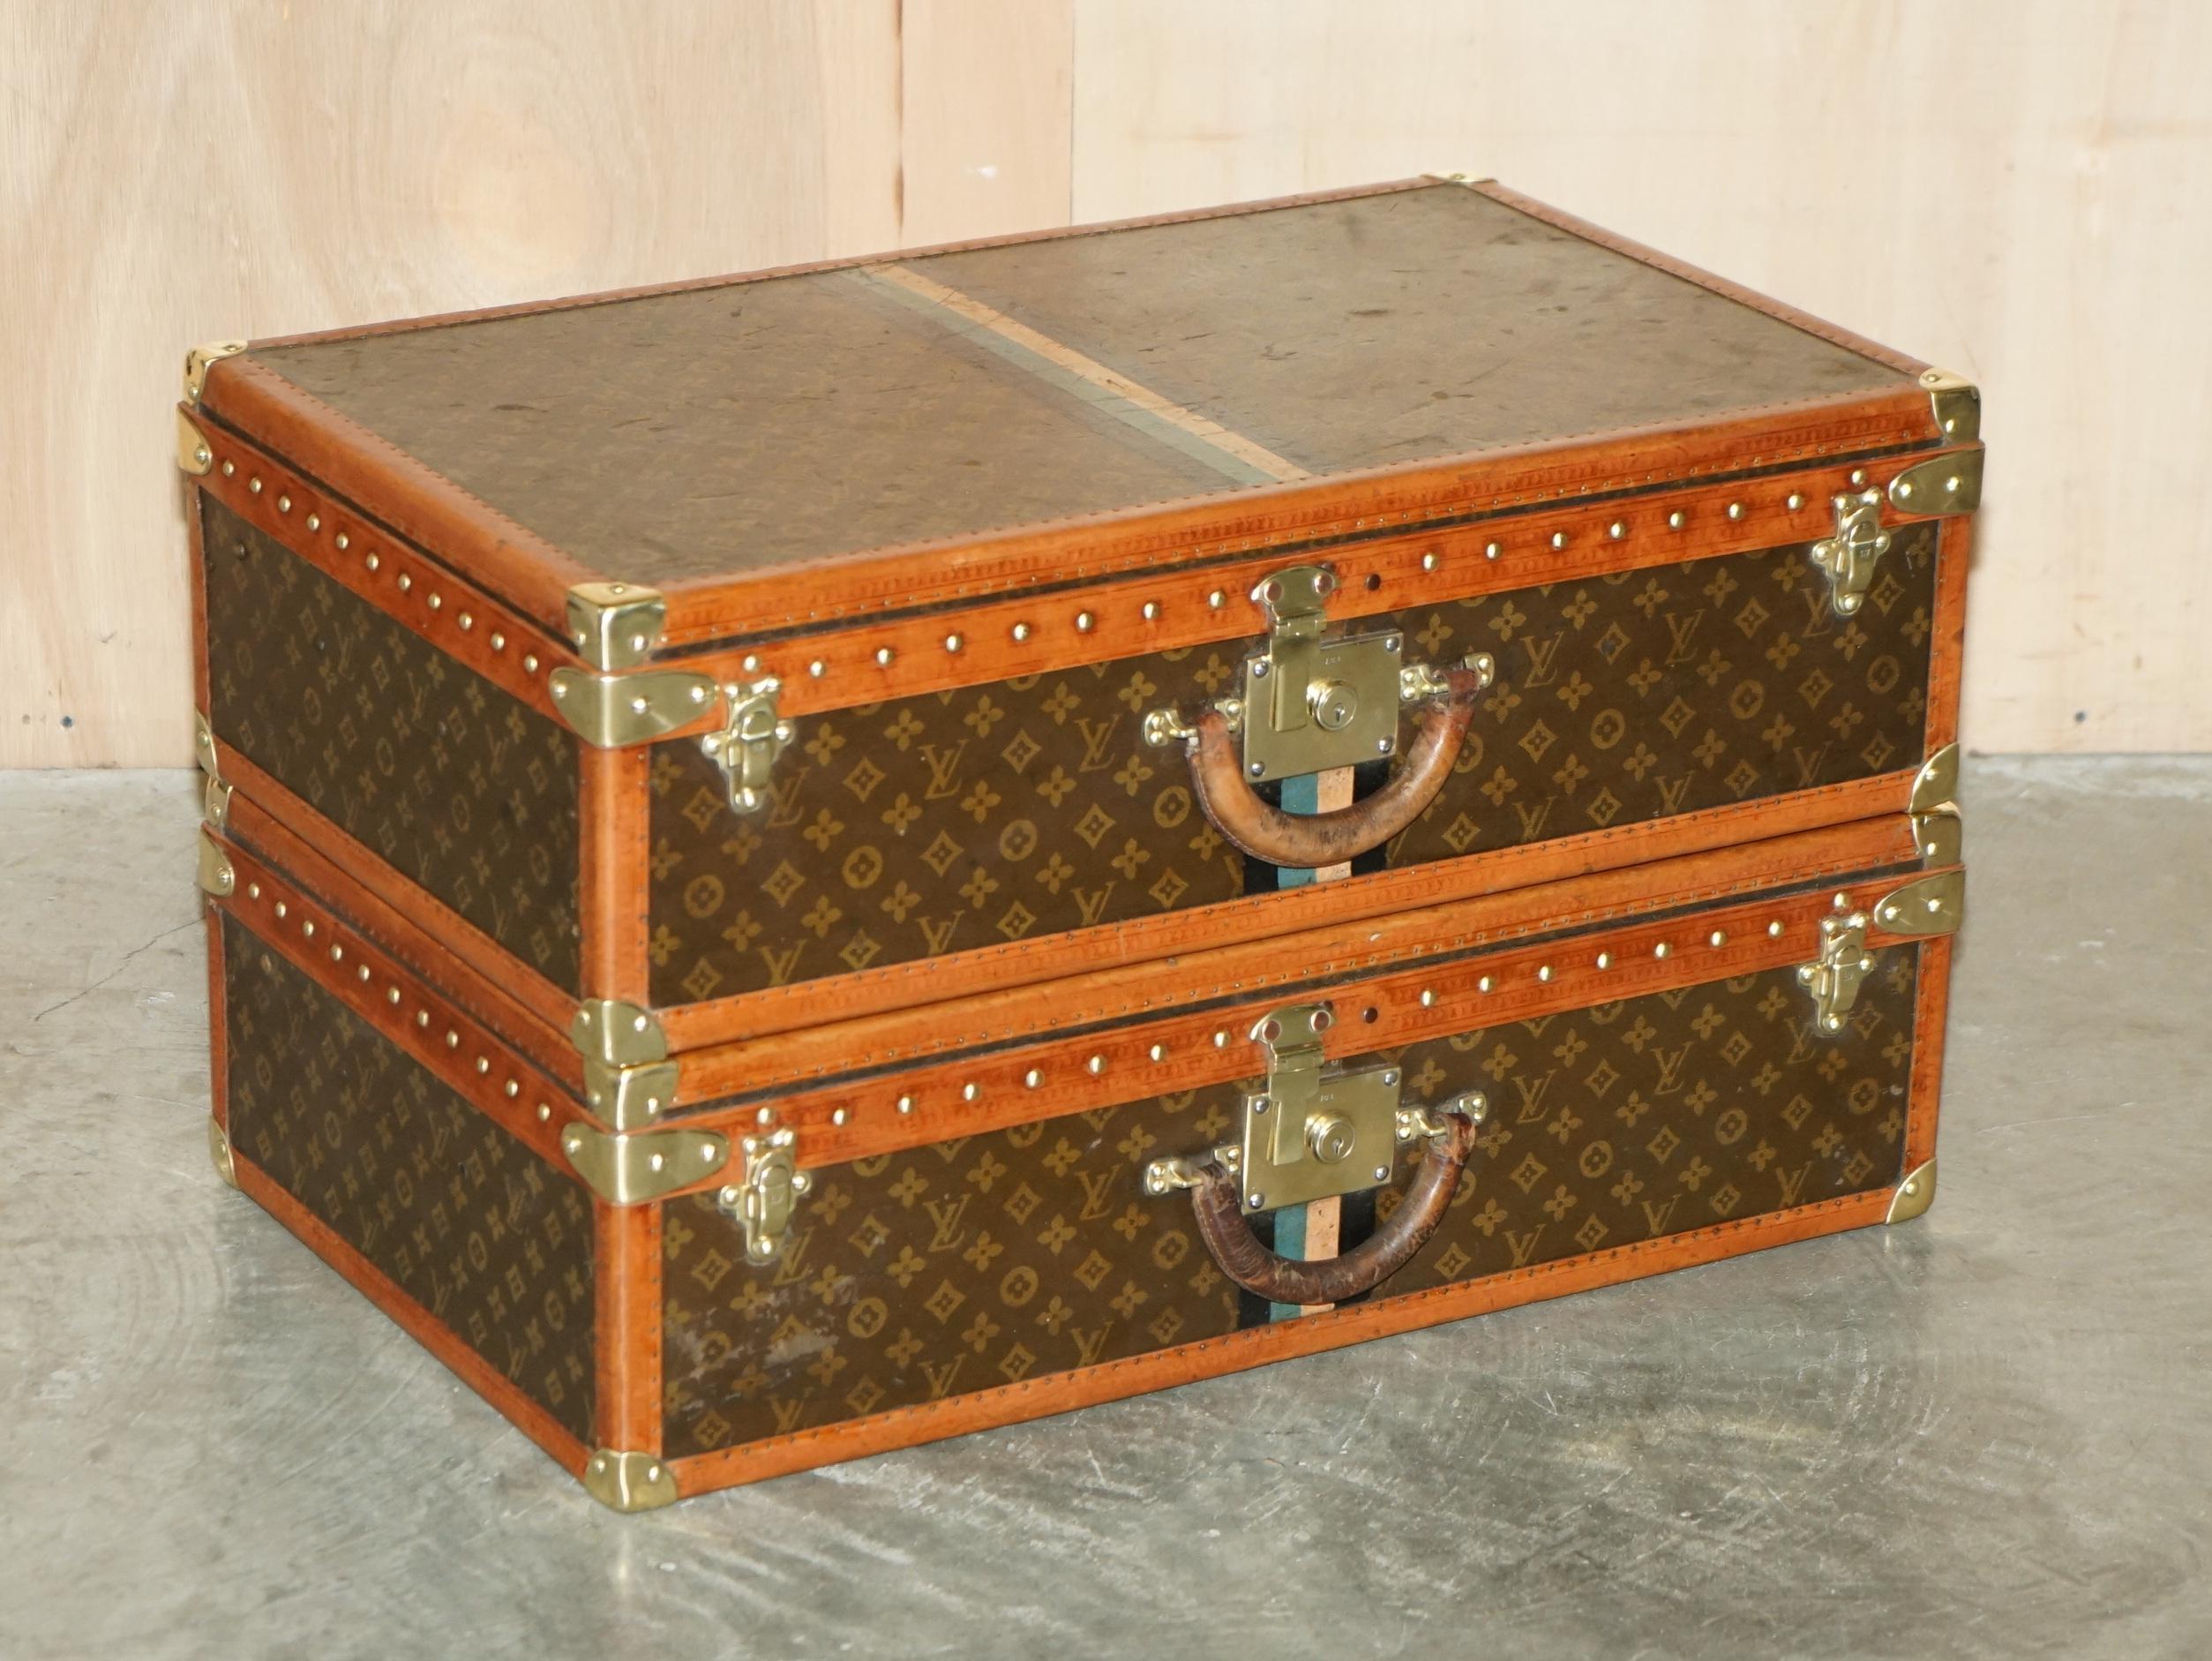 Royal House Antiques

Royal House Antiques freut sich, dieses absolut atemberaubende Paar vollständig restaurierter originaler Louis Vuitton Monogram Koffer zum Verkauf anbieten zu können. 

Bitte beachten Sie die Liefergebühr aufgeführt ist nur ein